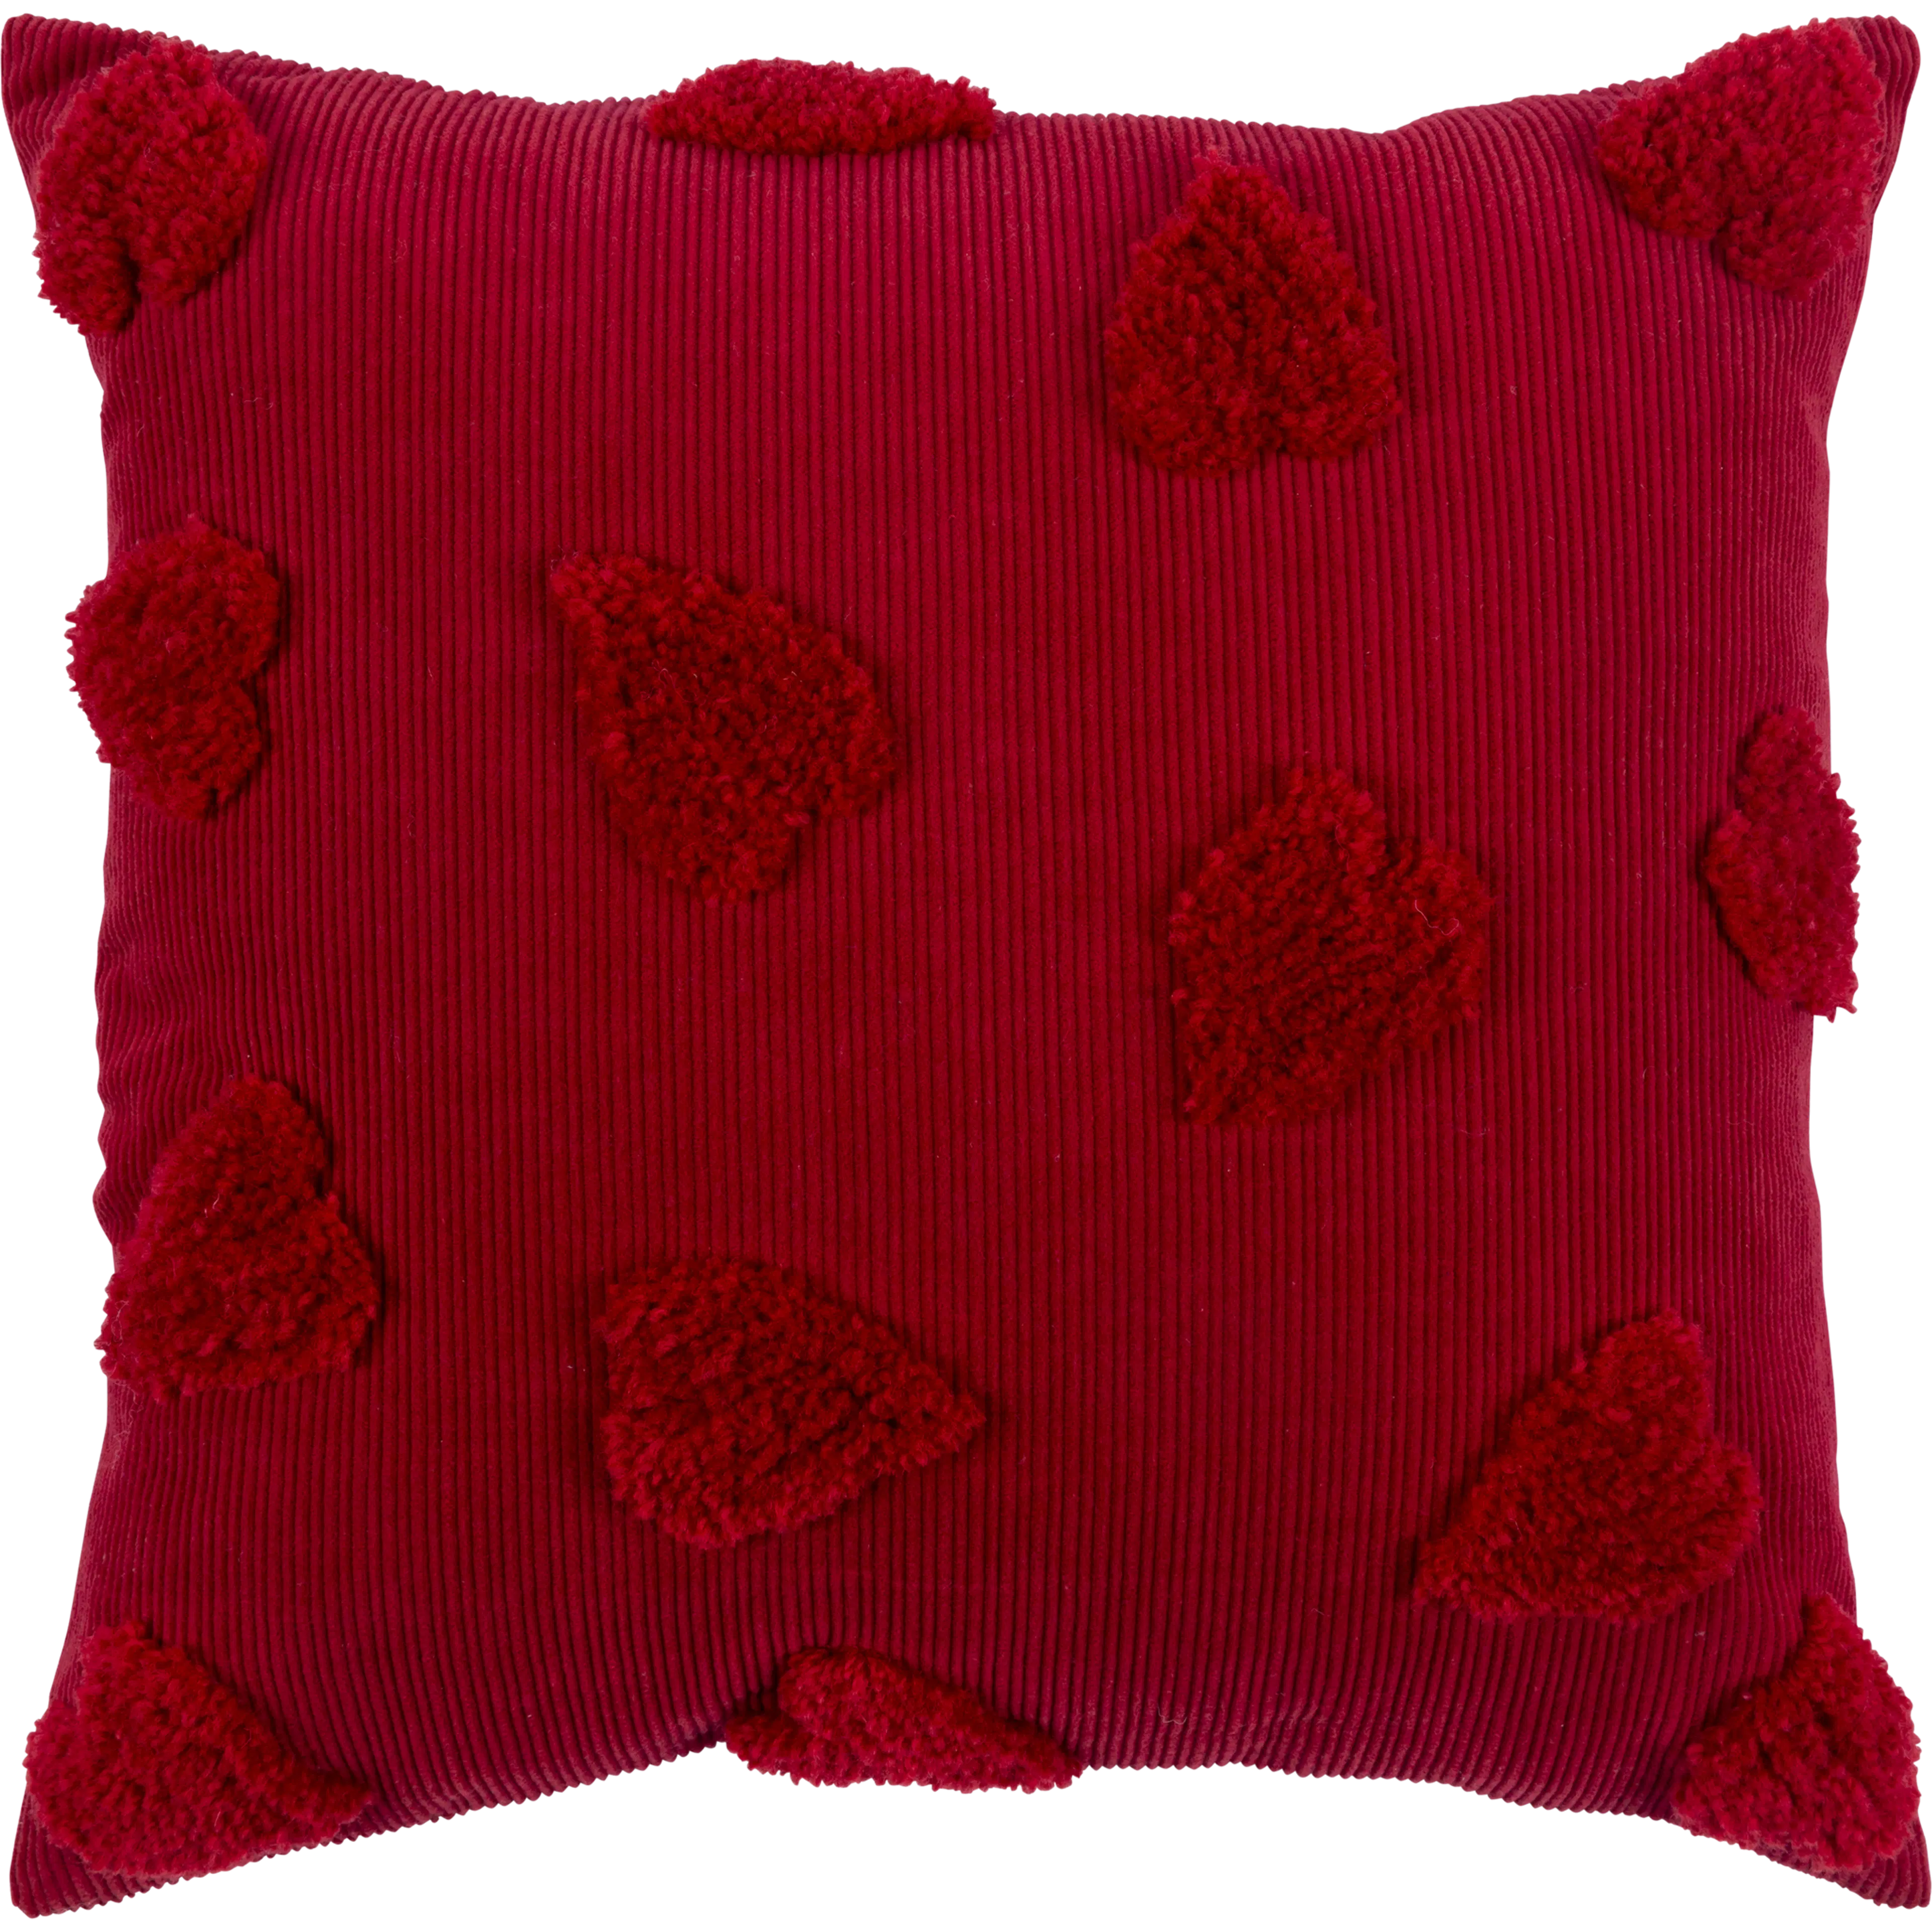 Pentik Sydän tuftattu tyynynpäällinen punainen 45x45 cm